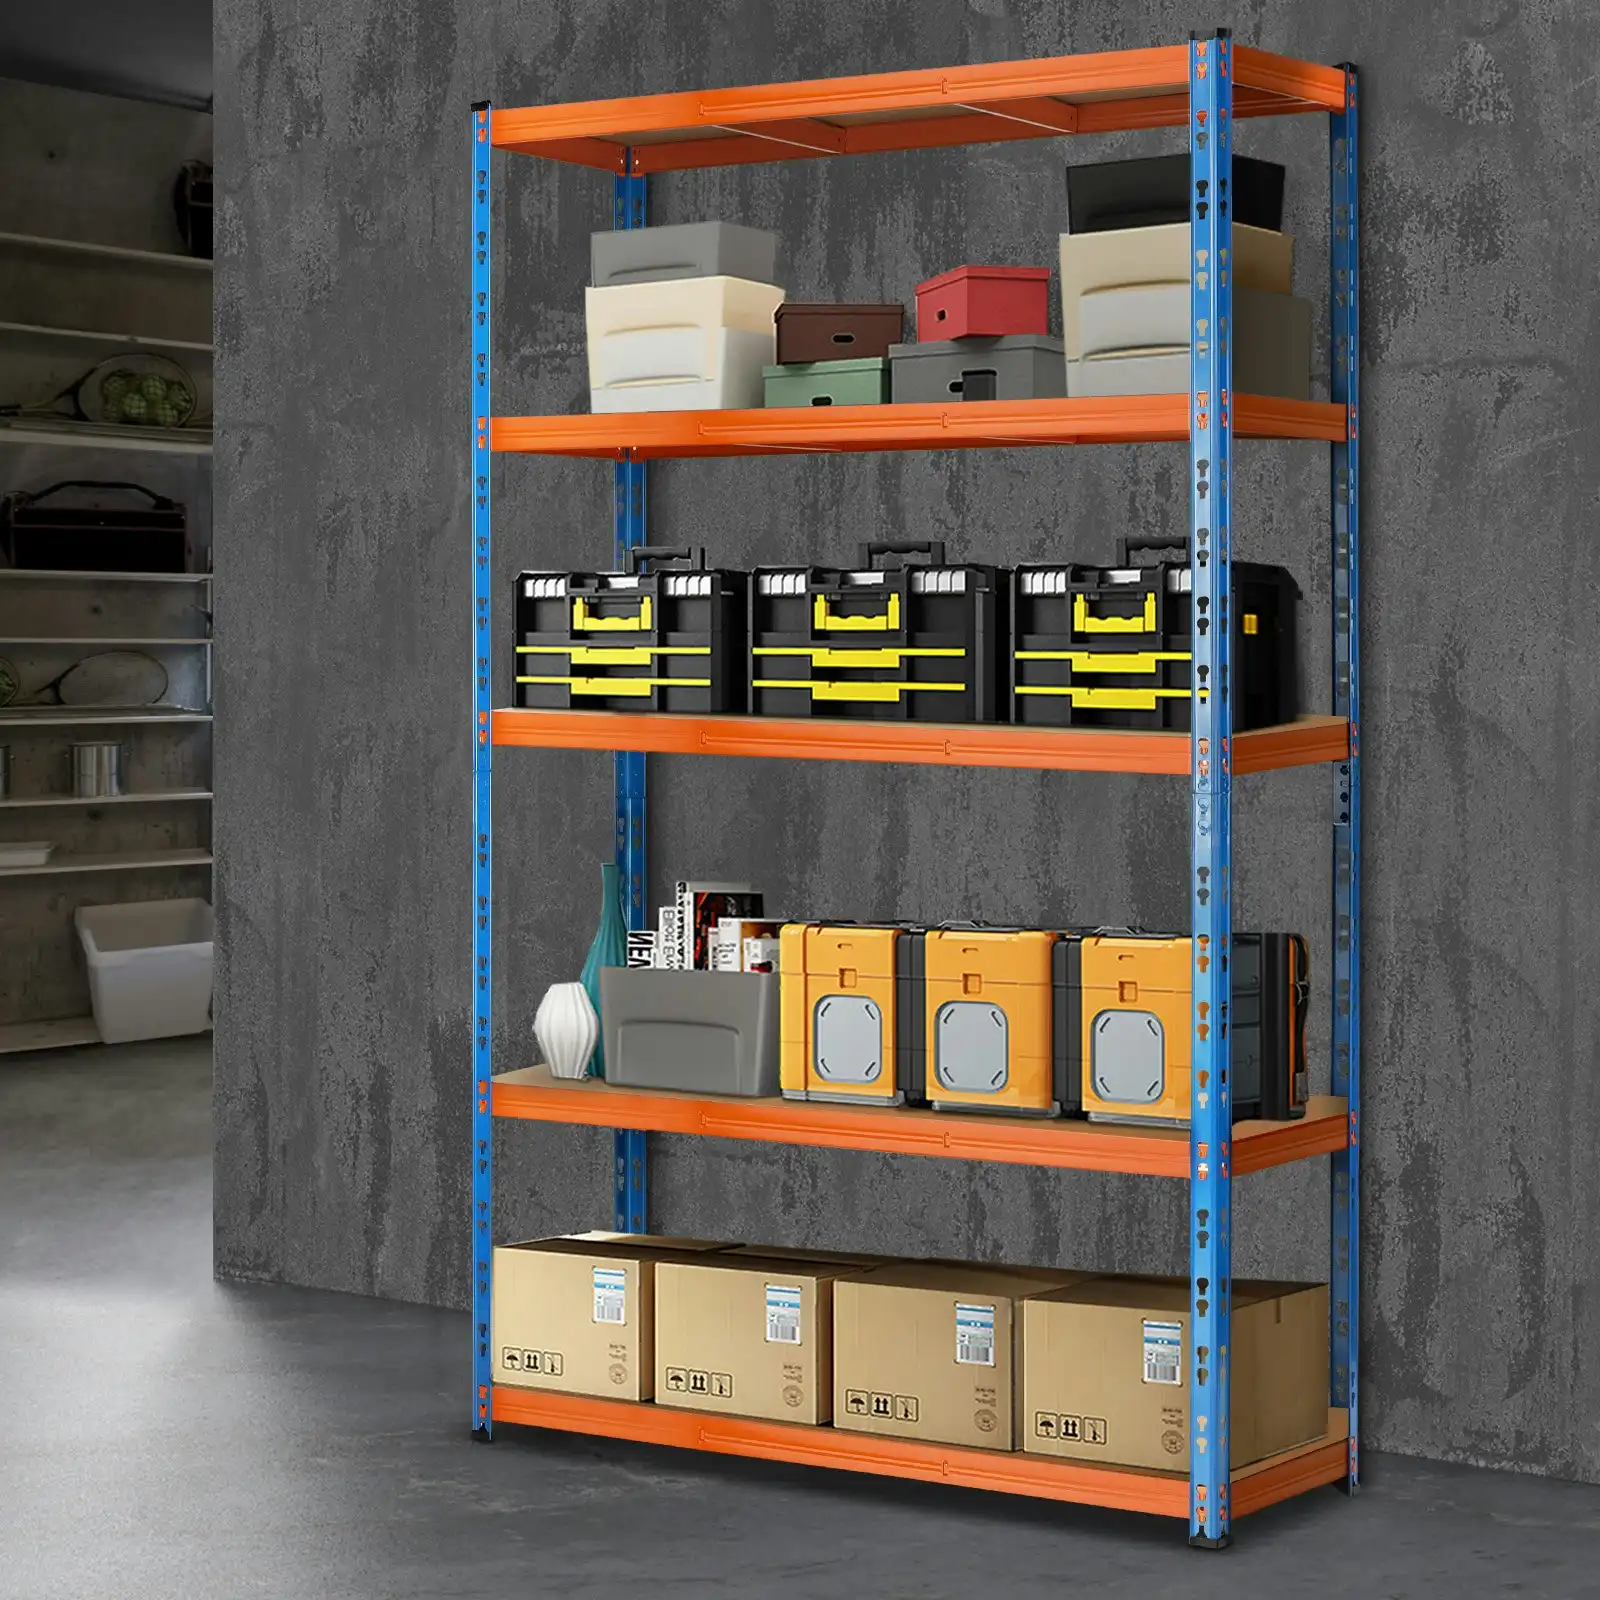 Sharptoo Garage Shelving Warehouse Shelves Storage Rack Pallet Racking 1.8*1.2m Orange